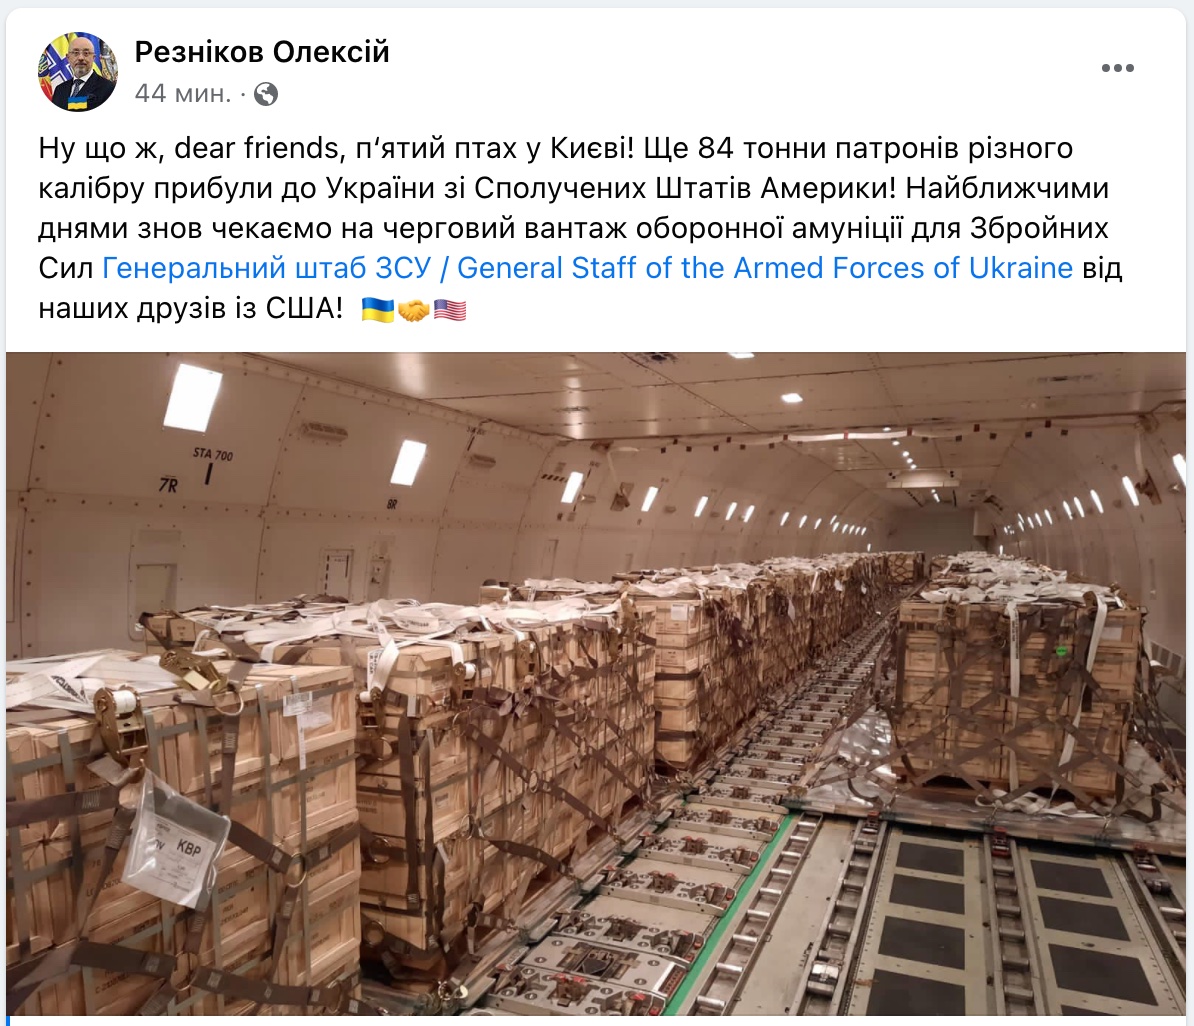 84 тонны патронов. В Украину прибыл пятый самолет с военной помощью из США – Резников